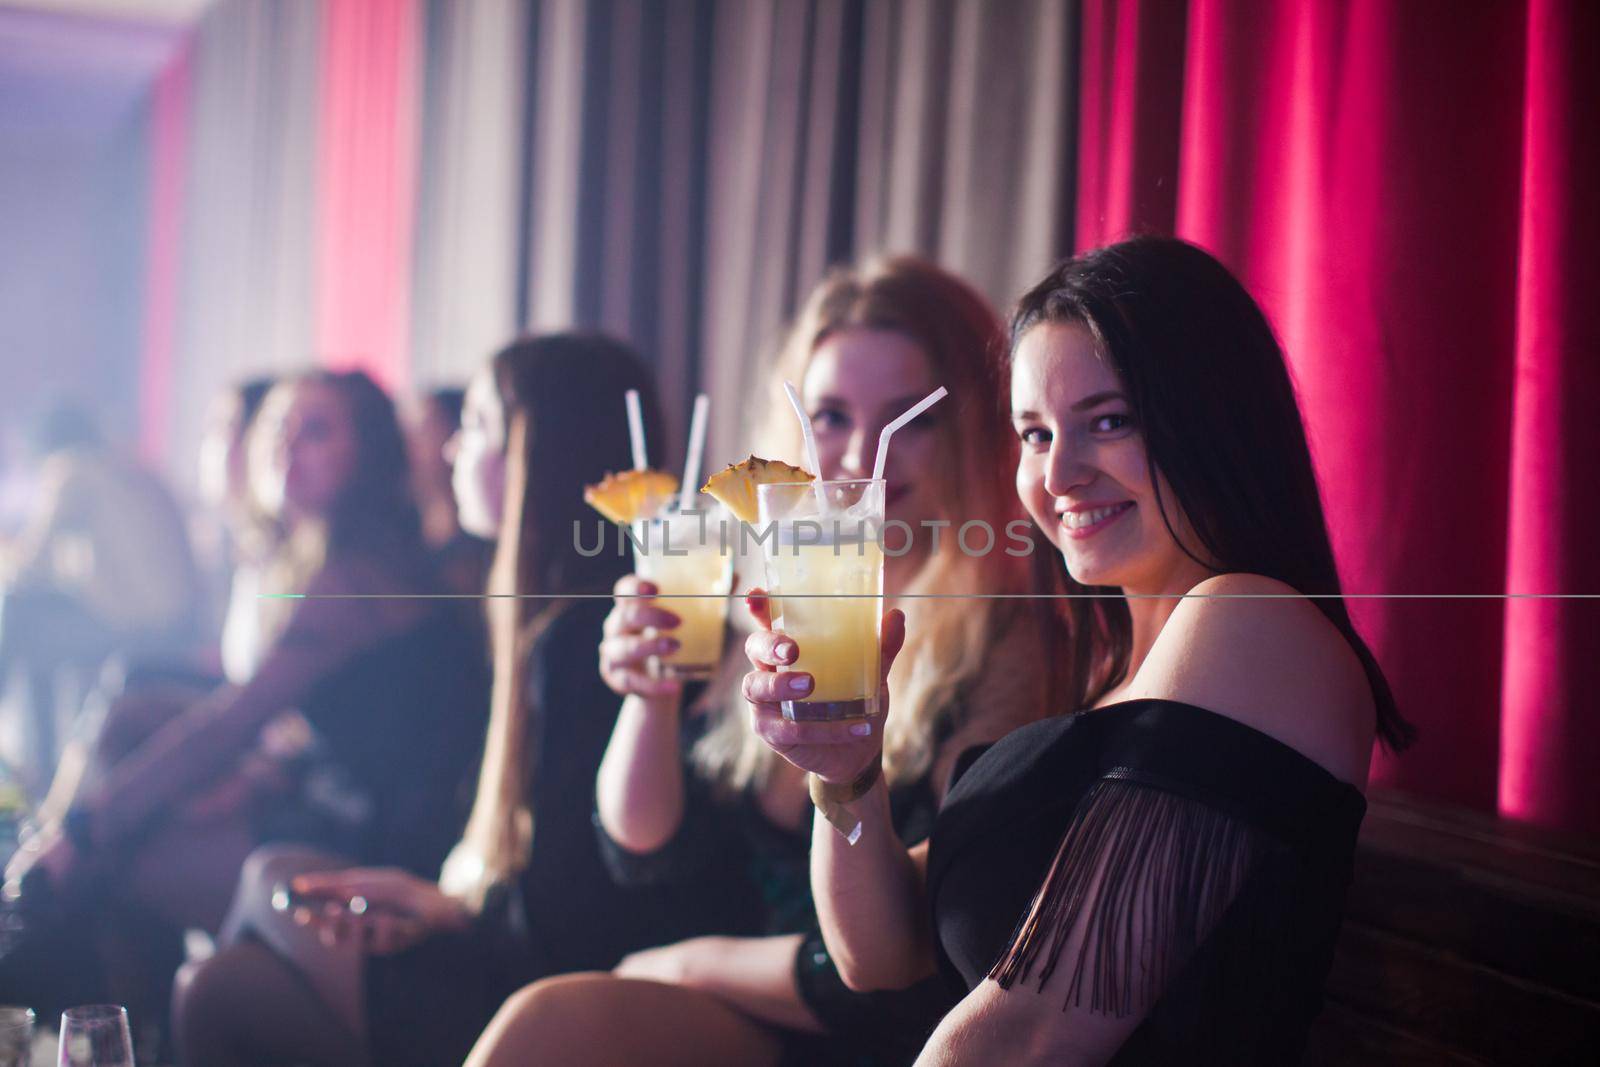 Group of dancing women enjoying night in club